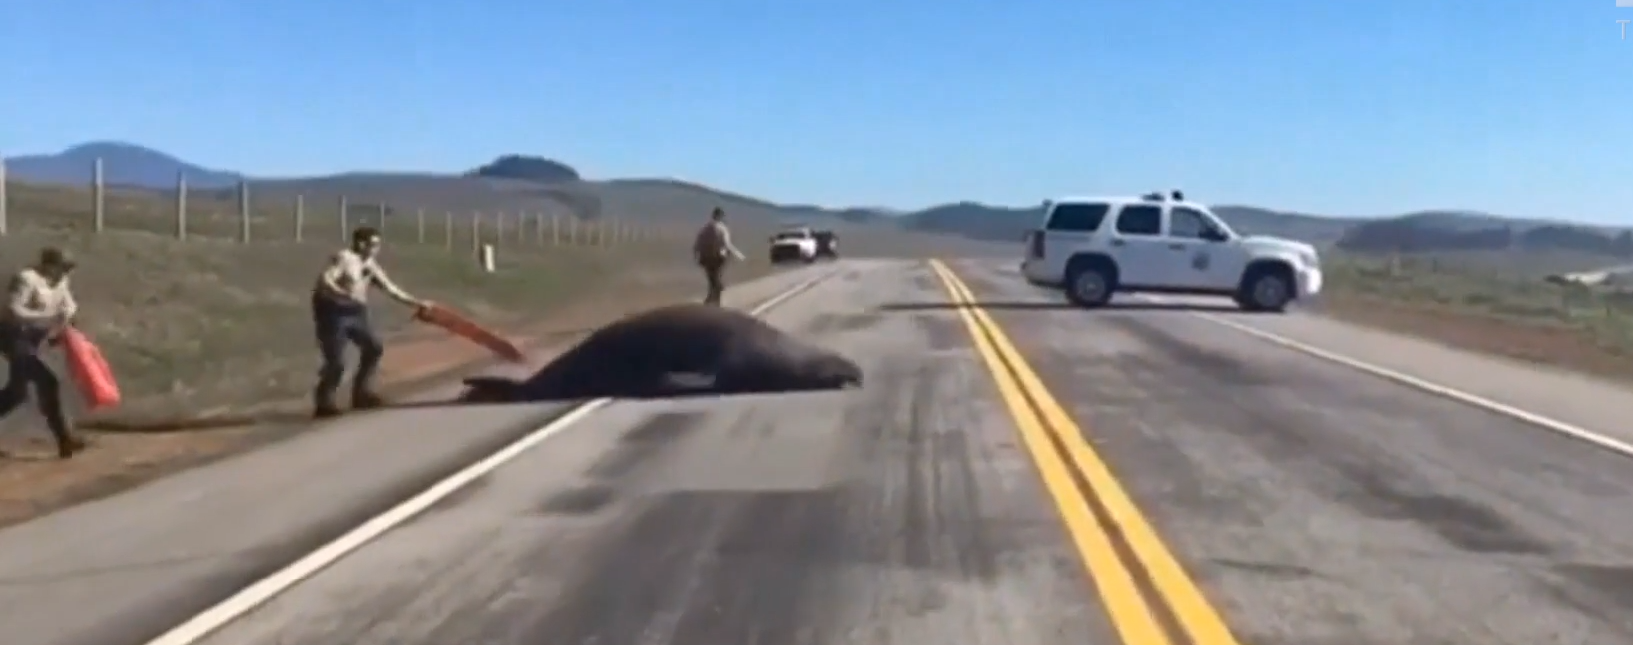 Морской слон заблокировал автостраду в Калифорнии